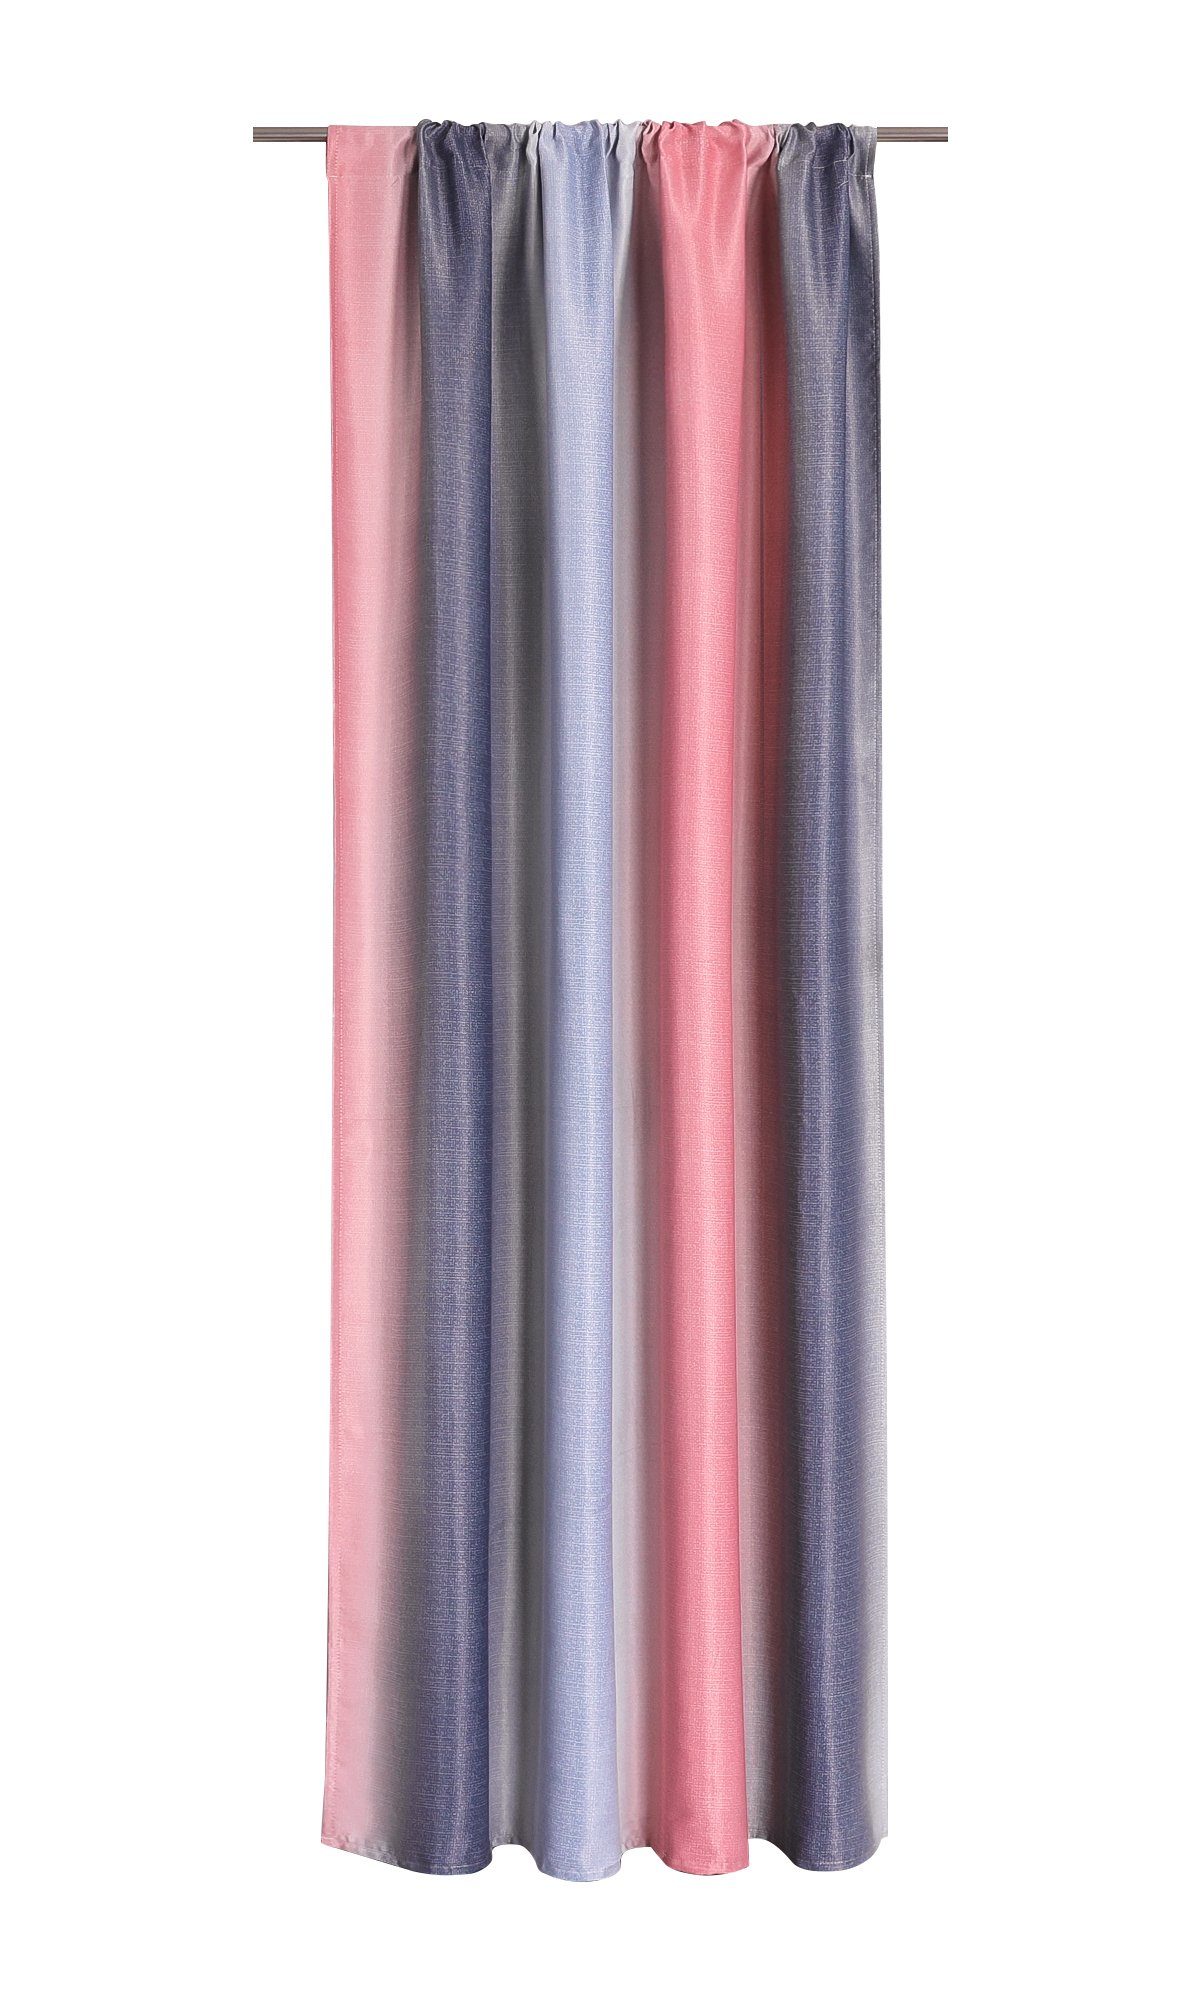 Vorhang, Joyswahl, Stangendurchzug (1 St), blickdicht, Farbelauf pink-grau